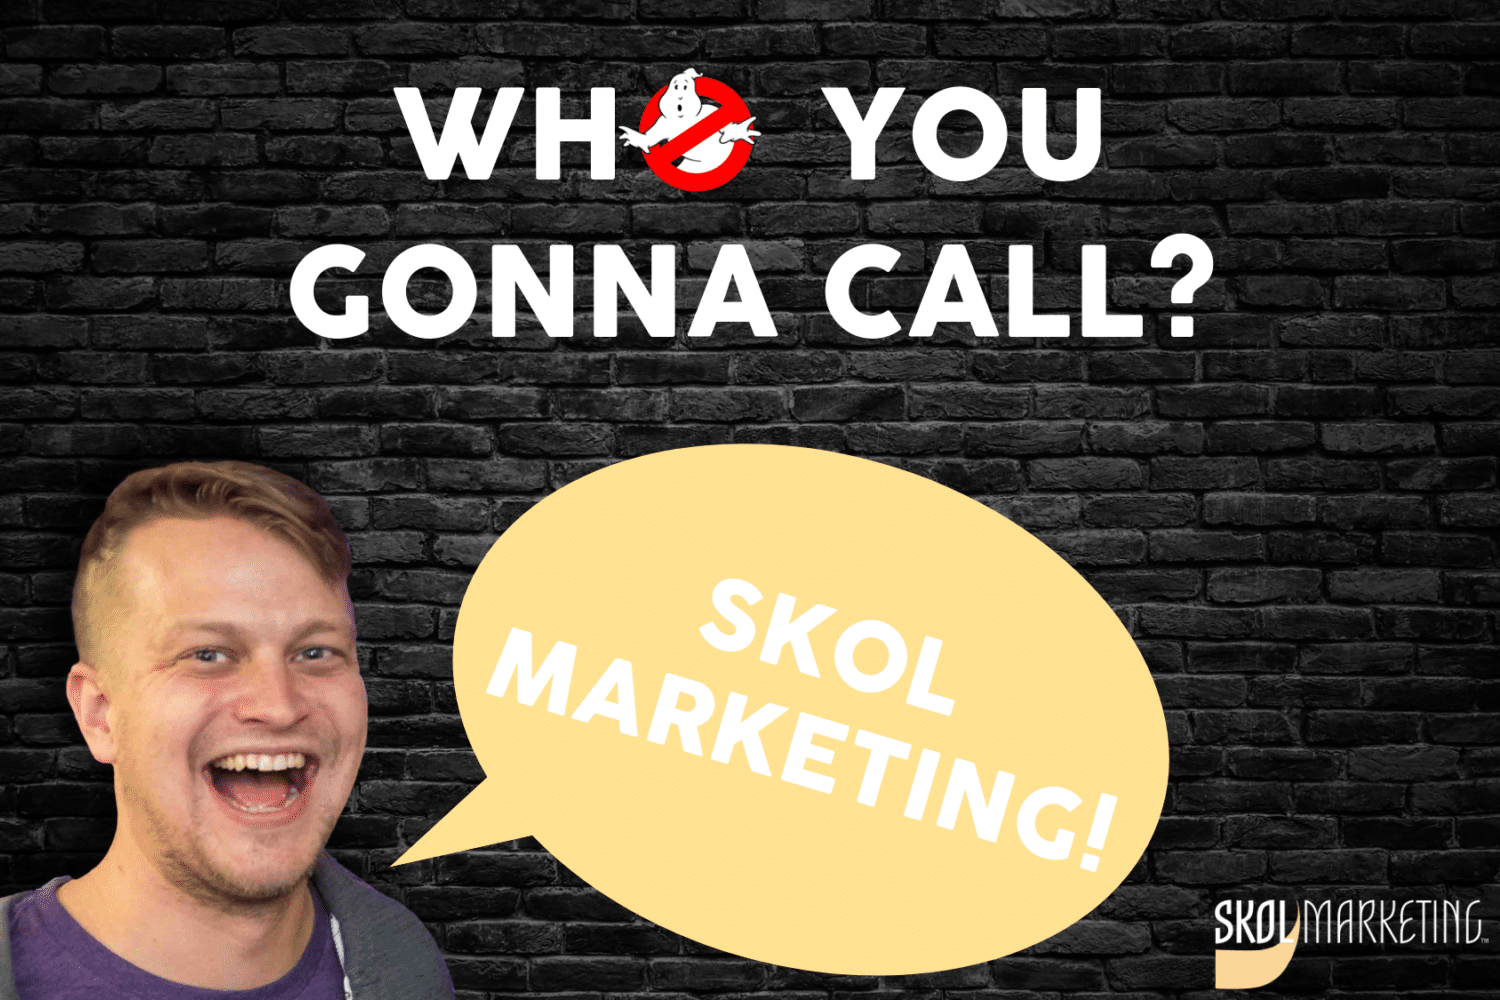 who you gonna call skol marketing, minneapolis MN